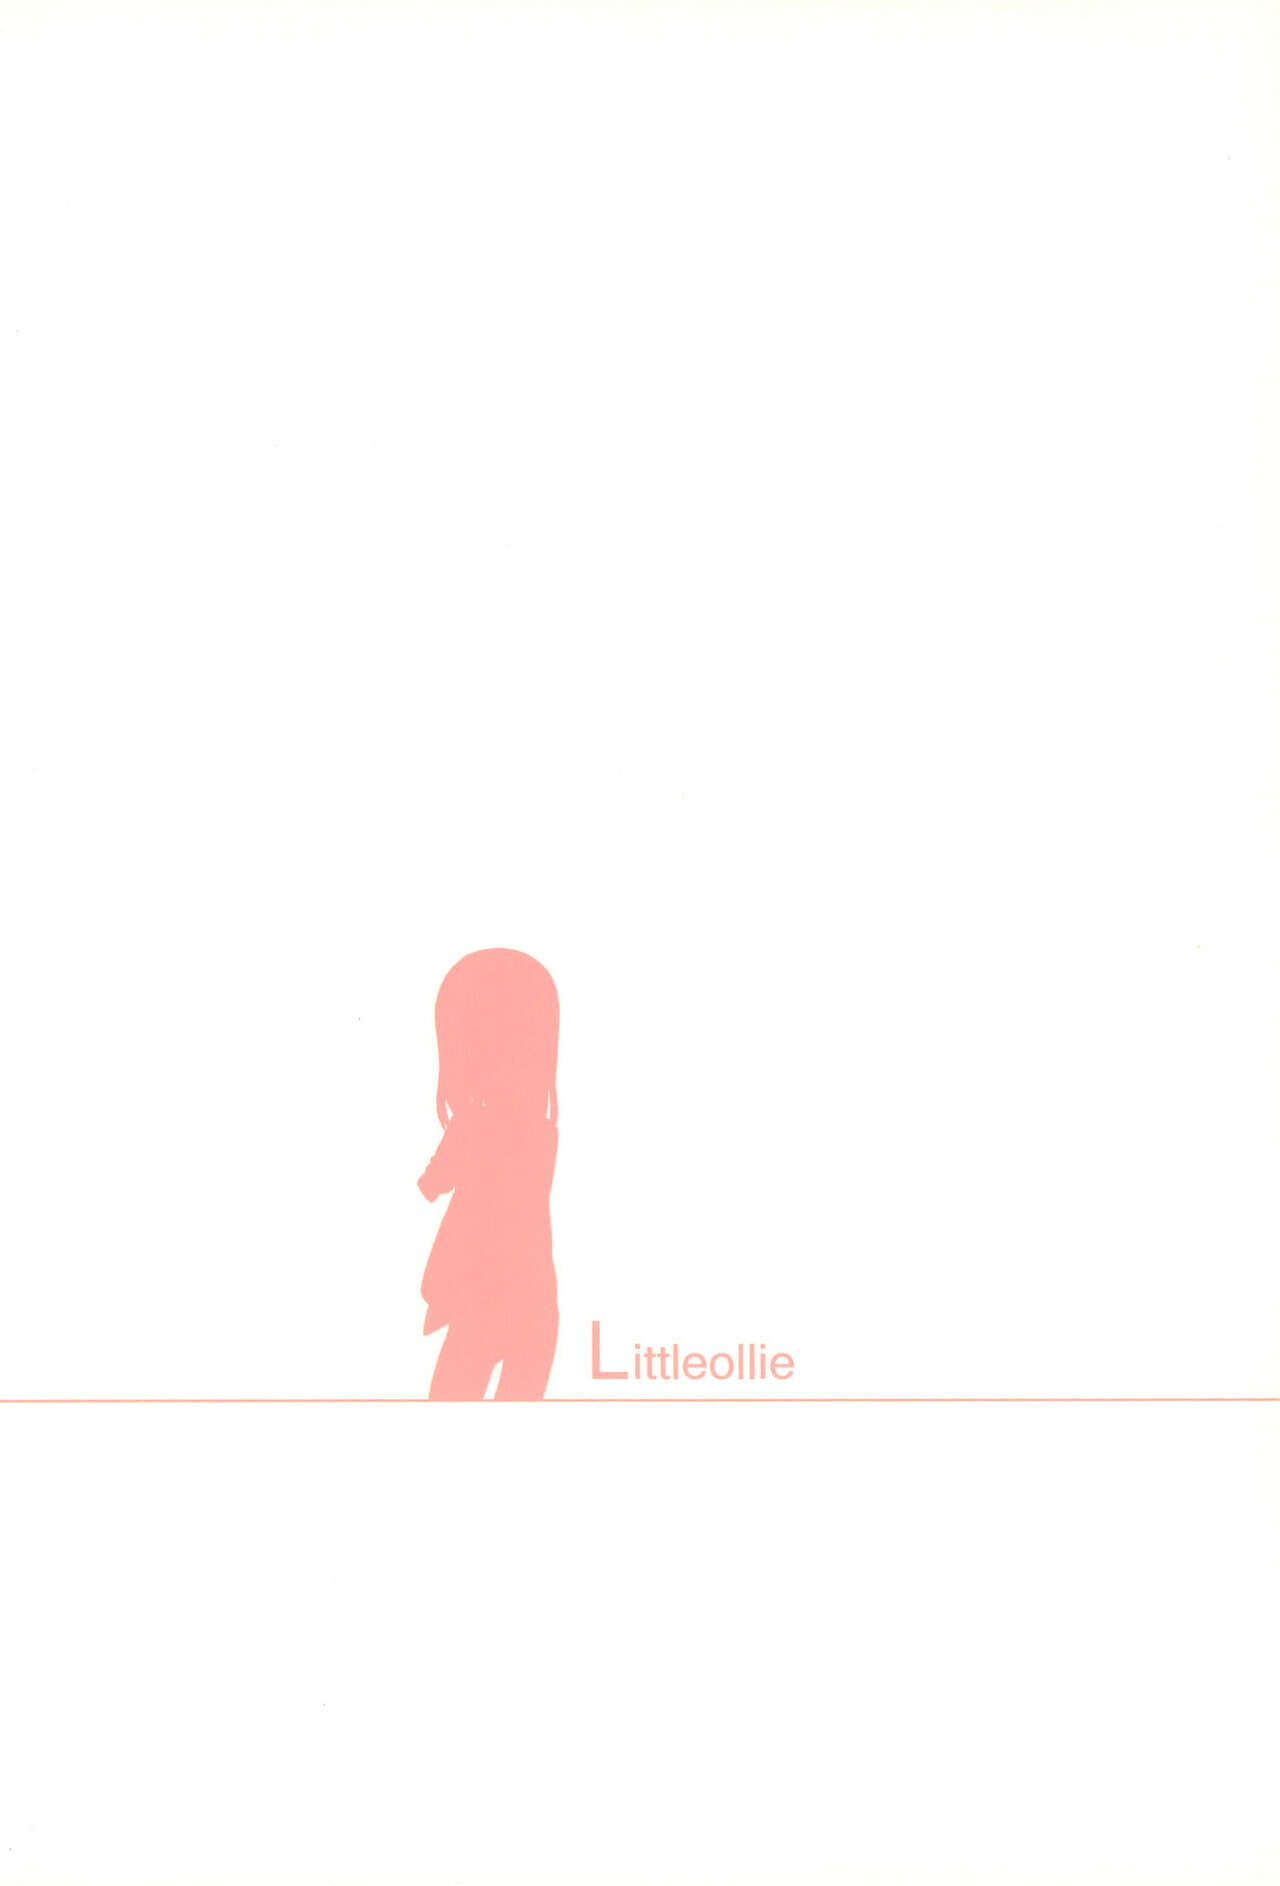 (コミティア103) [Littleollie (でぶらす)] Let Sister Rule